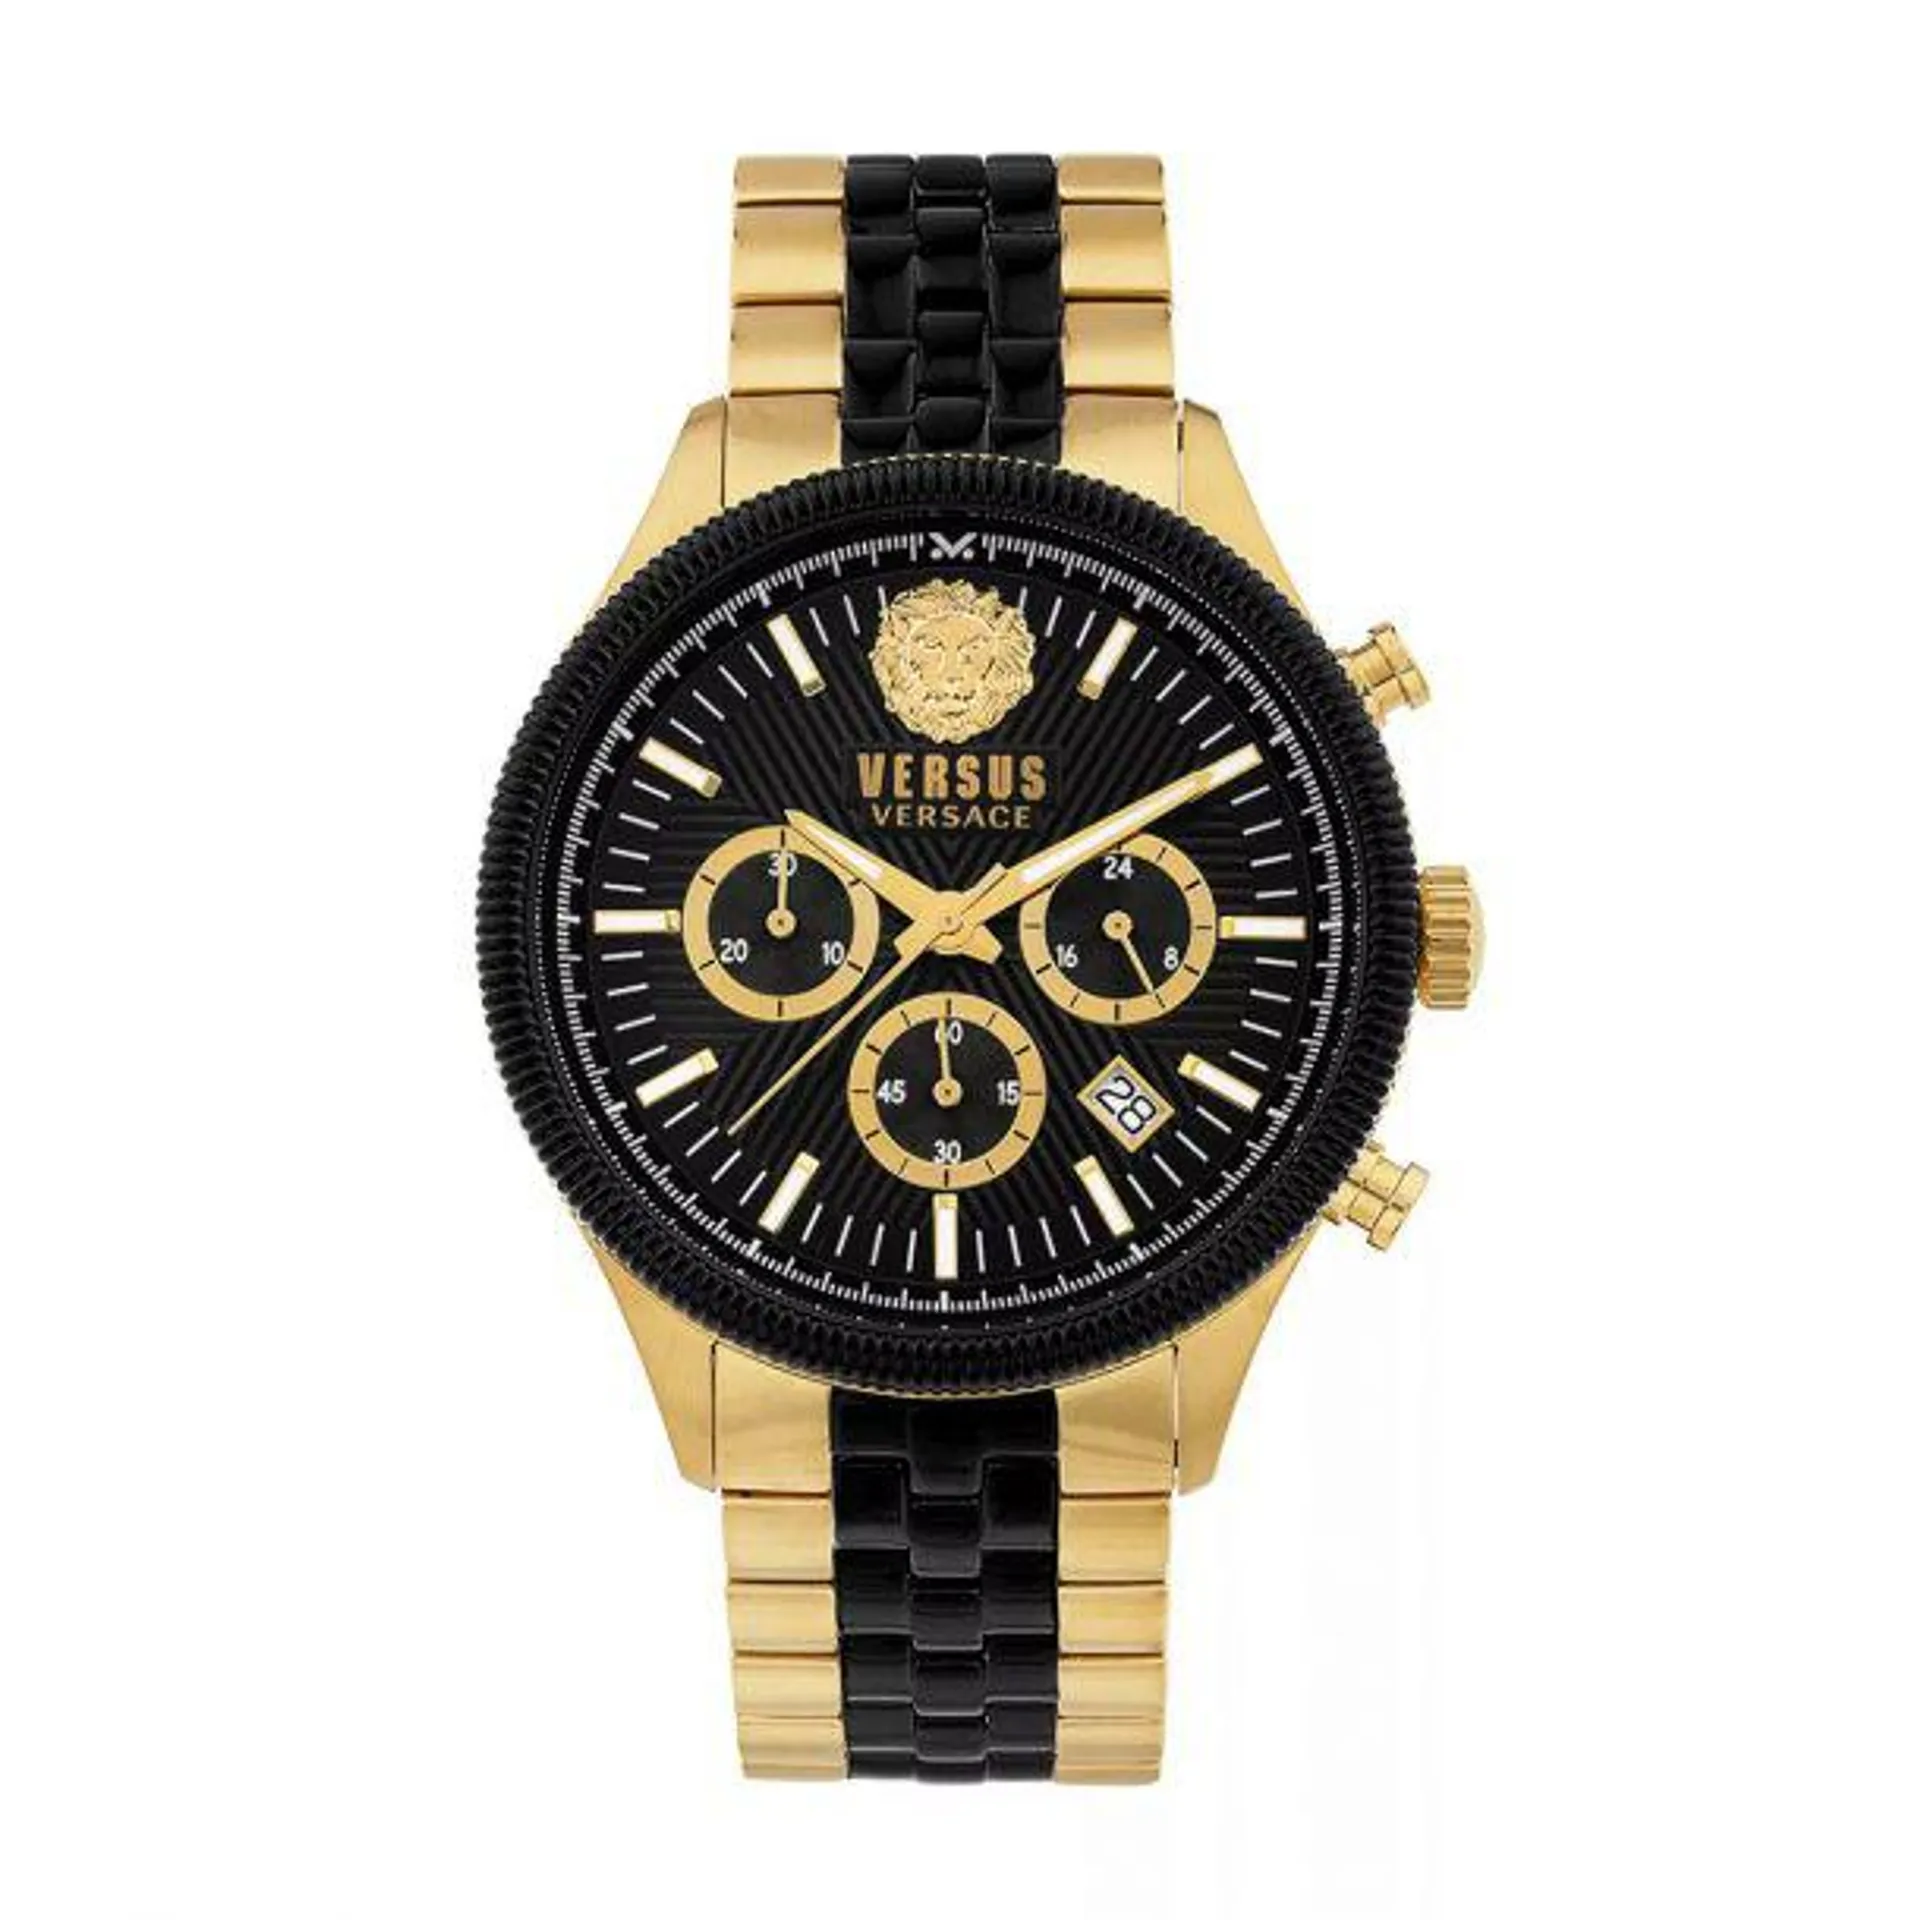 Versus Versace Colonne Chrono Men's 44mm Two-Tone Bracelet Watch - Black Dial